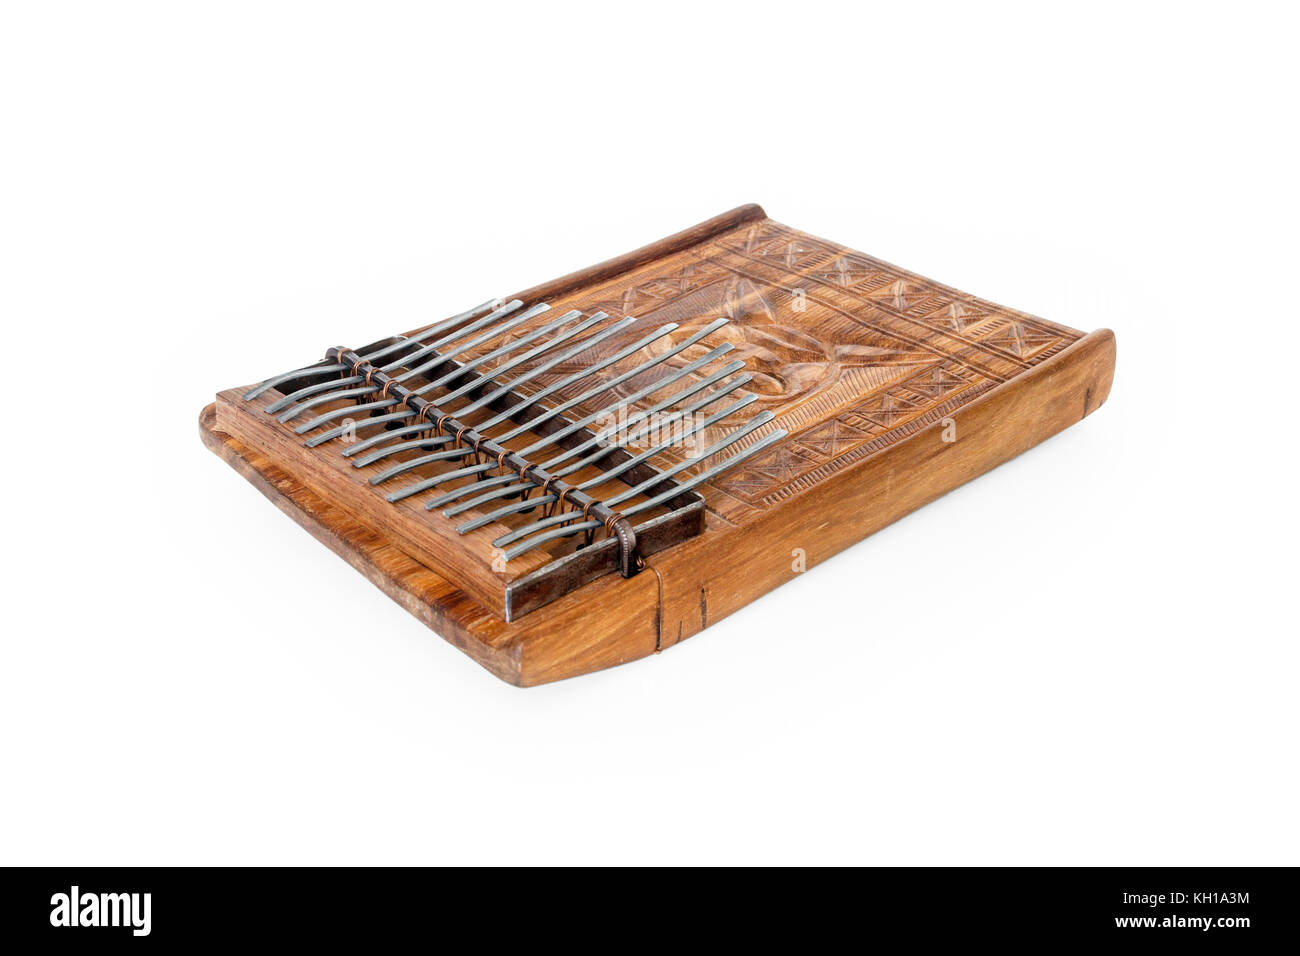 Mbira africana tradicional, un instrumento consistente en una caja de resonancia de madera y metal, de claves frentes Fotografía de Alamy